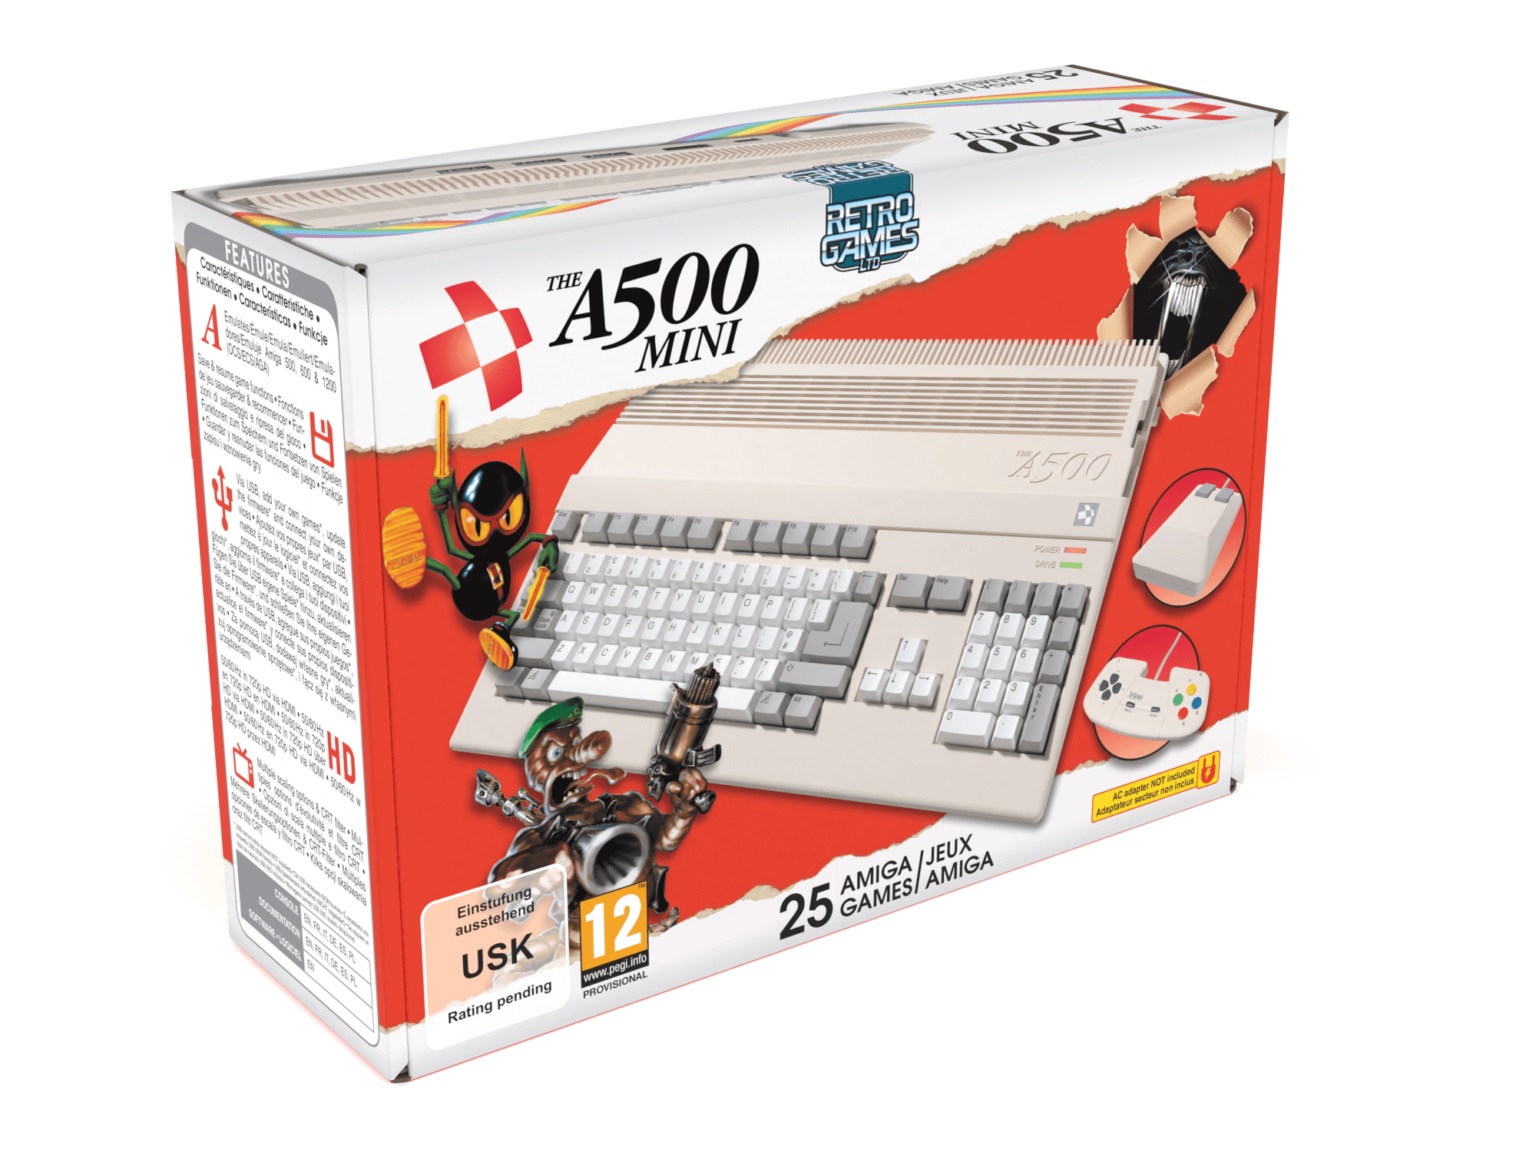 Amiga 500 A500 kutusu